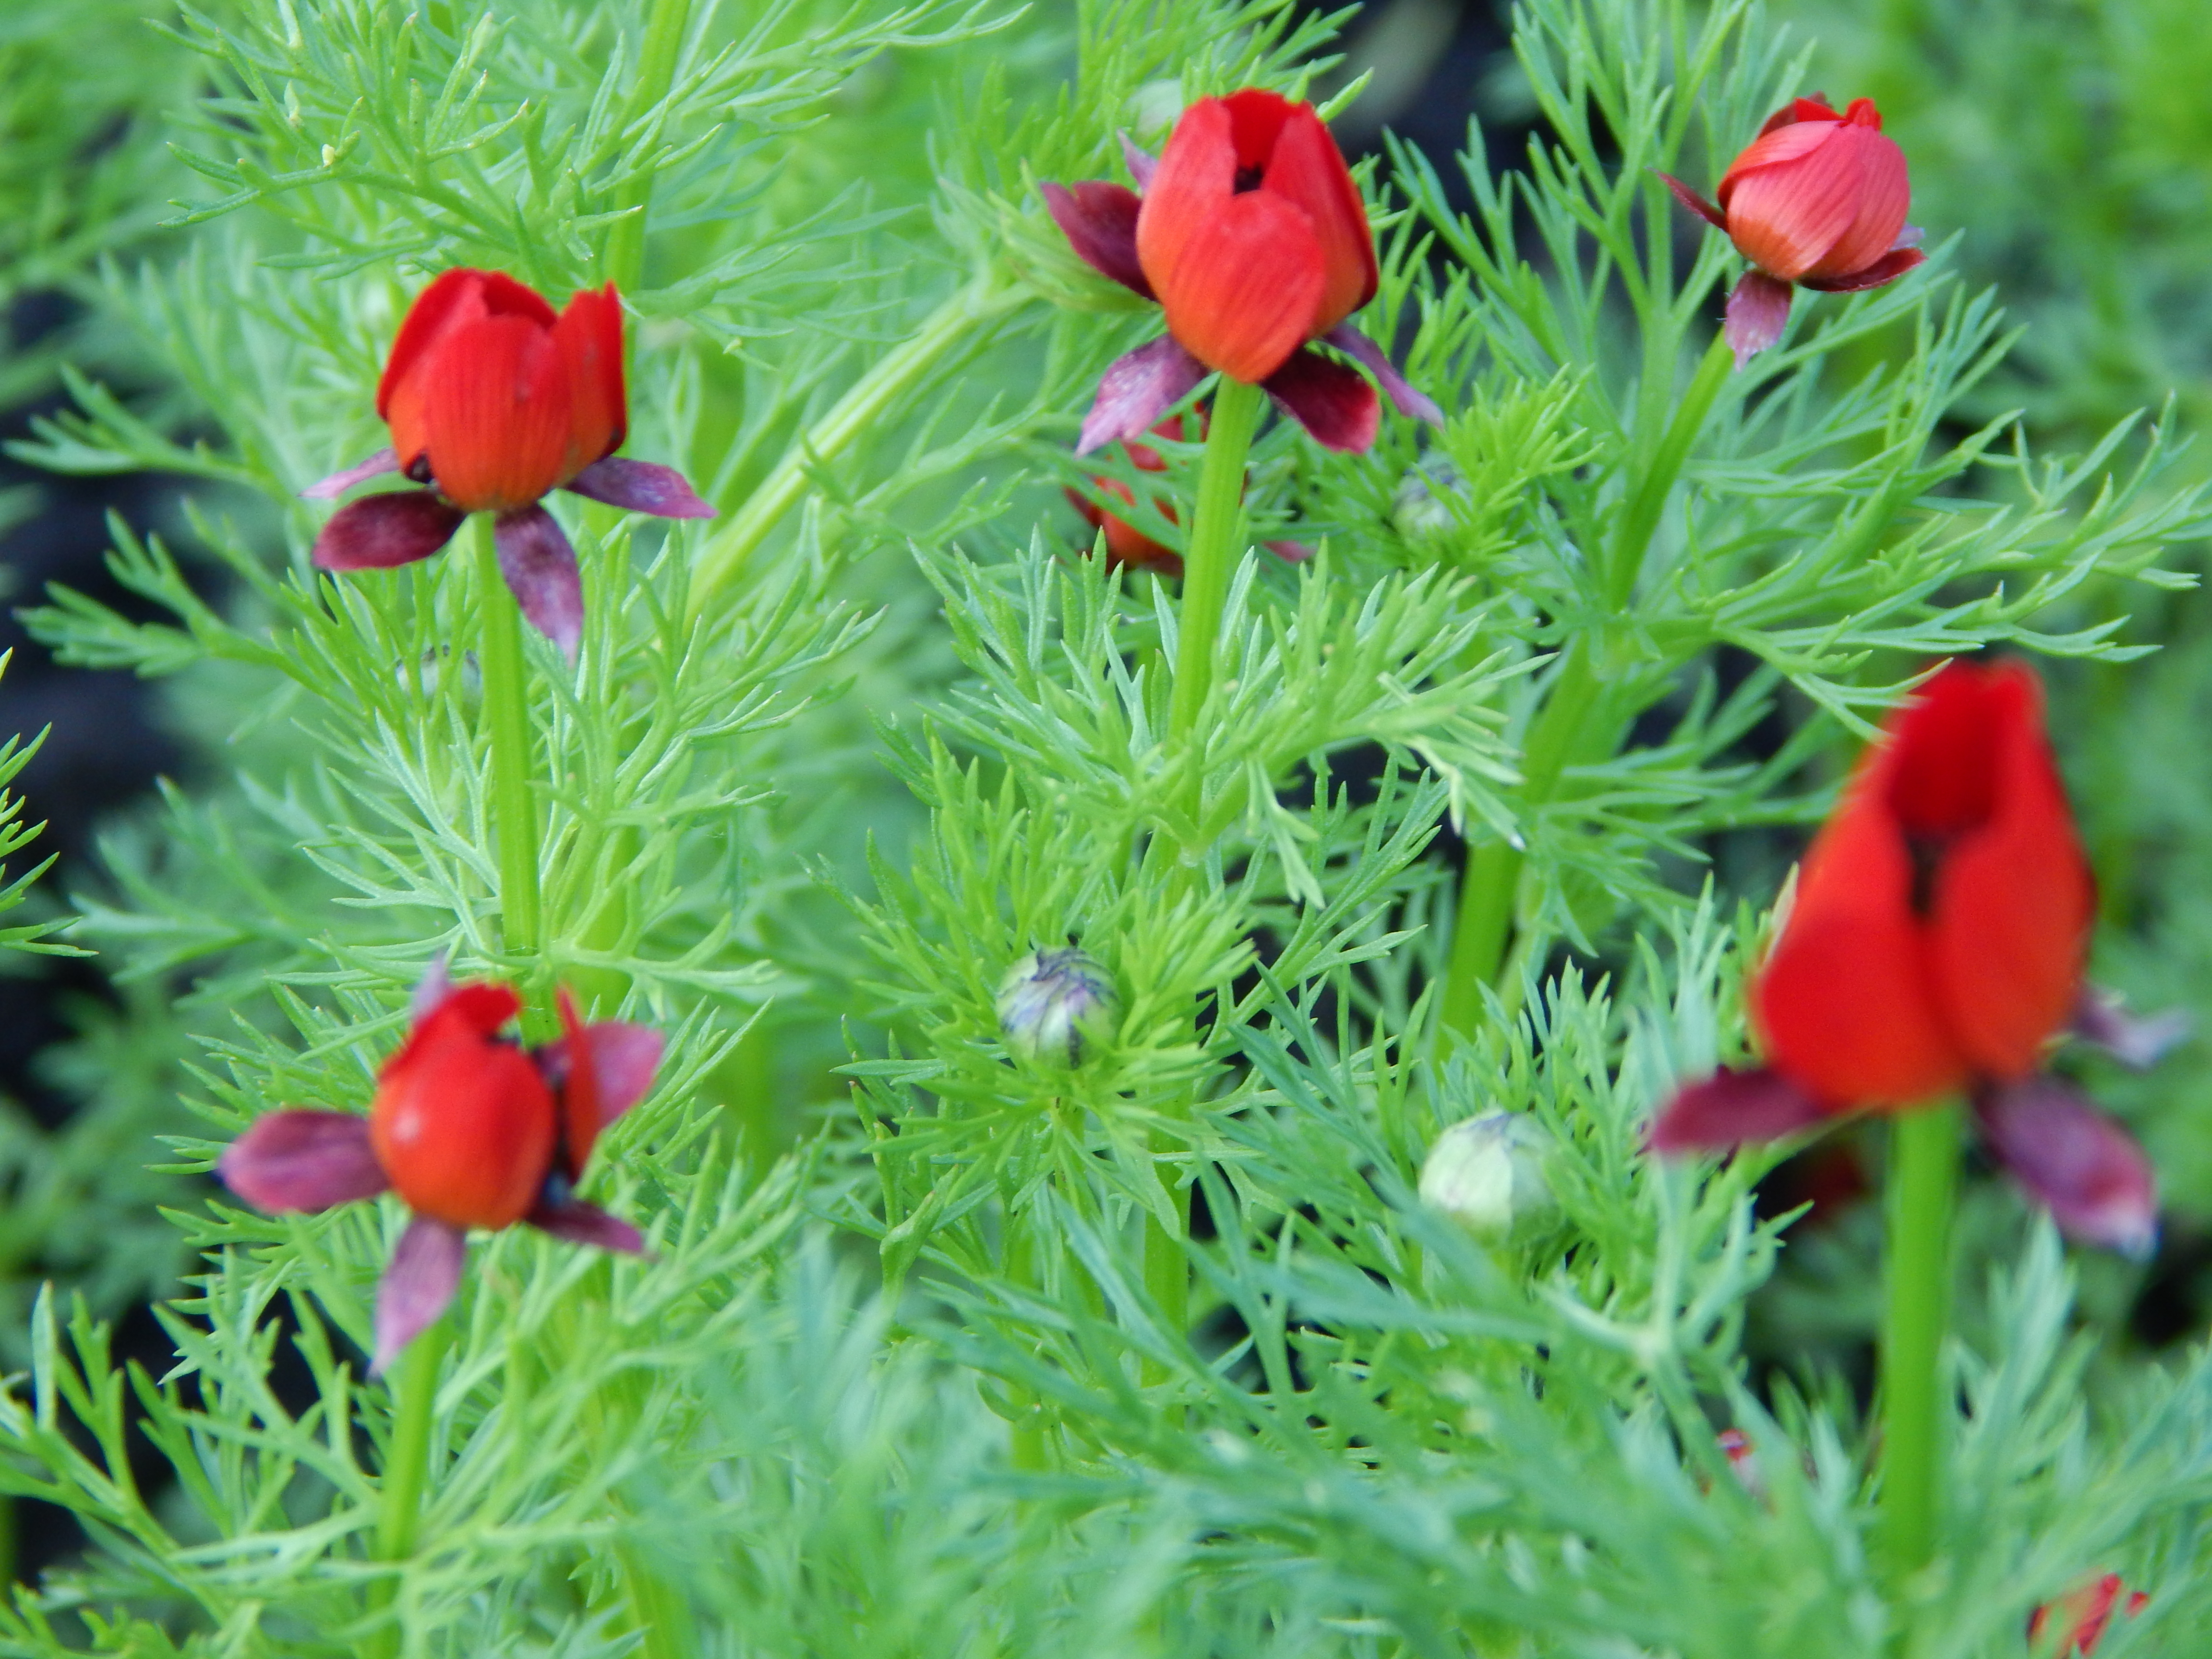 Цветок огонек садовый фото описание